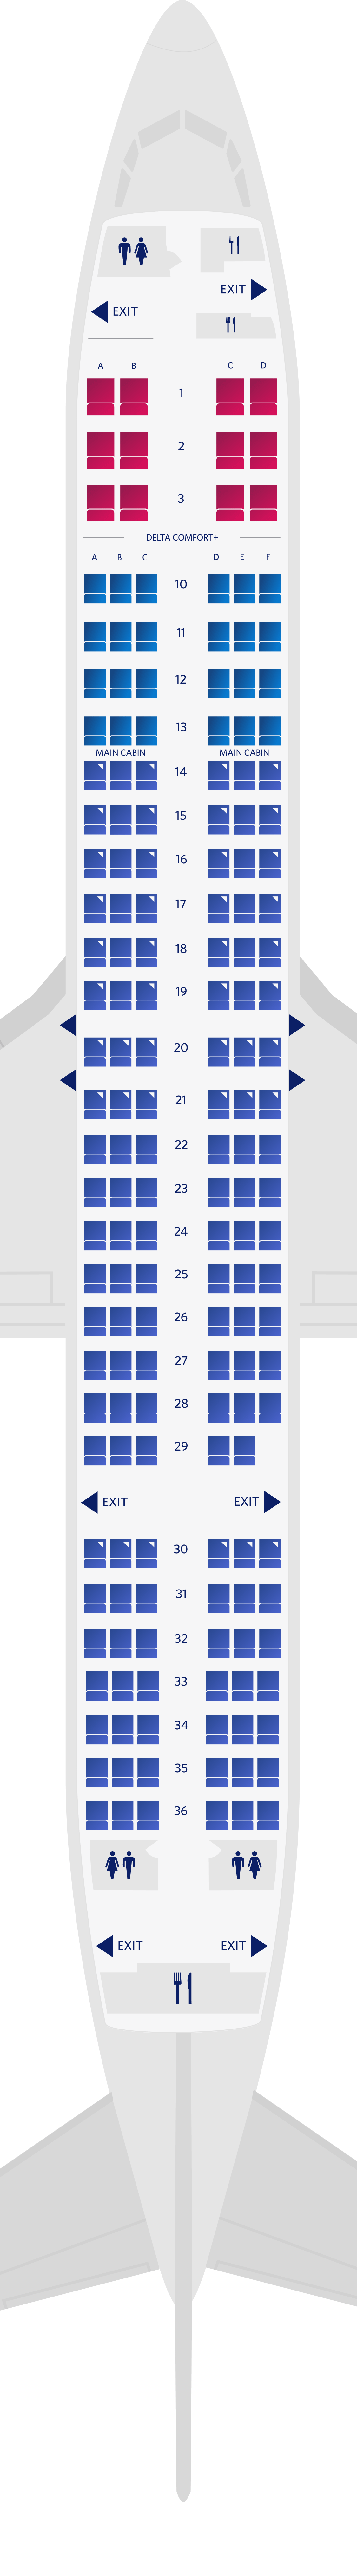 Configuration des sièges du Boeing 737-900-73R